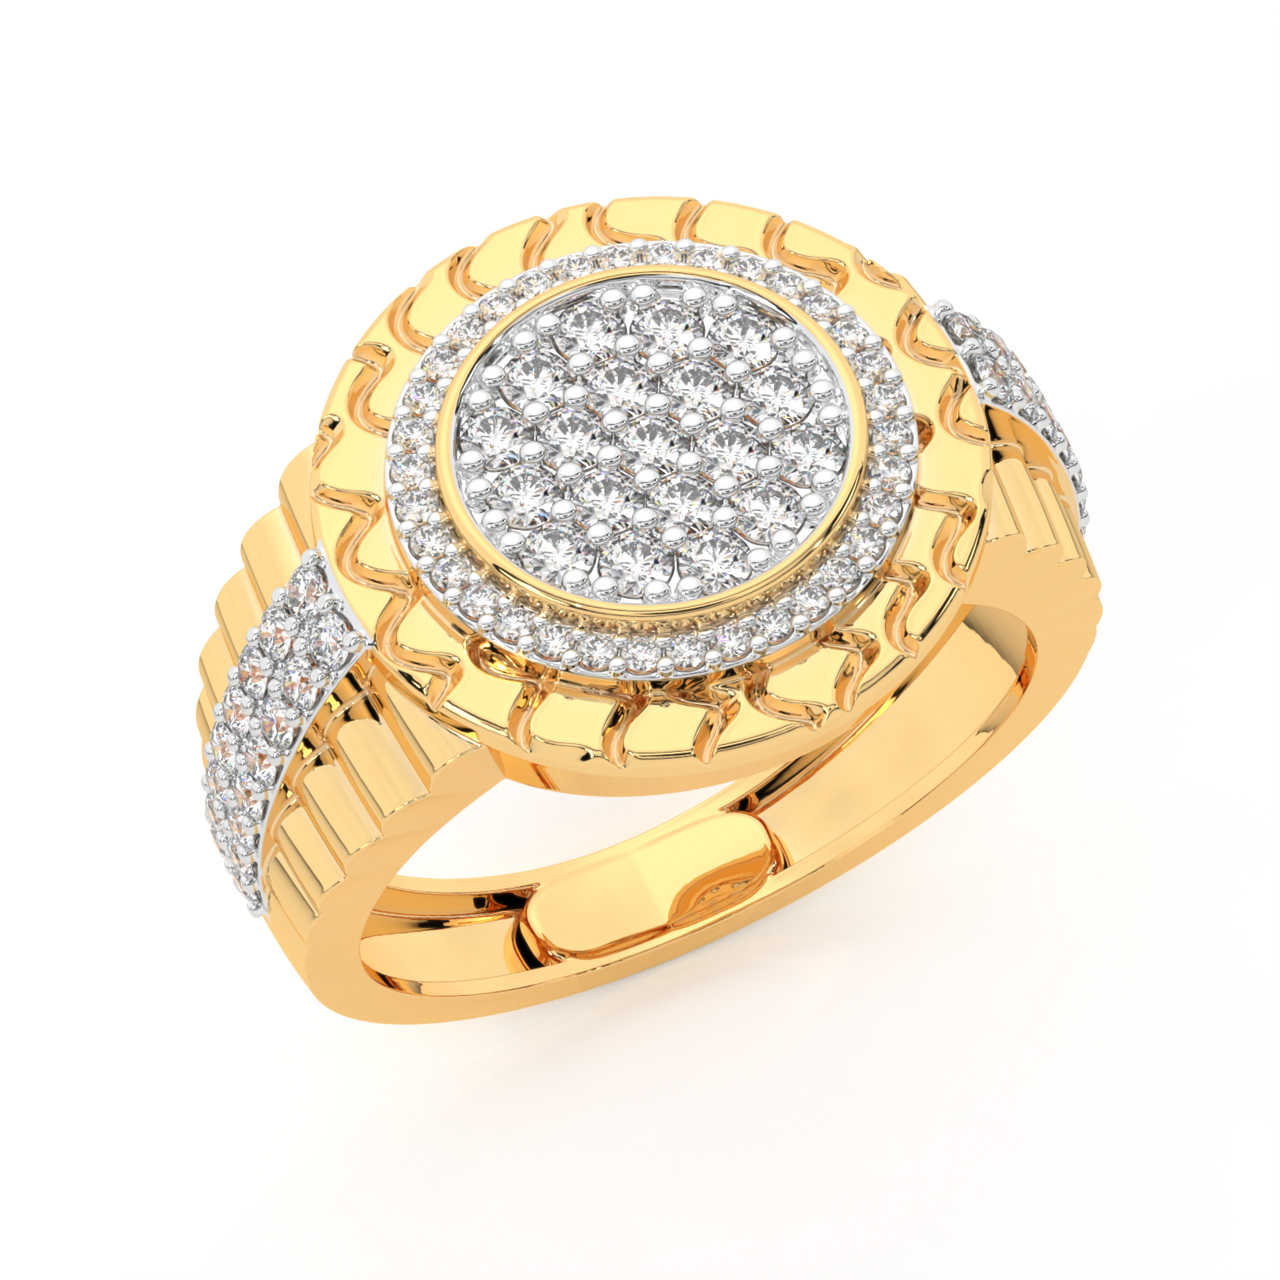 No hay ninguna descripción de la foto disponible. | Rings for men, Gold  rings jewelry, Mens wedding rings gold